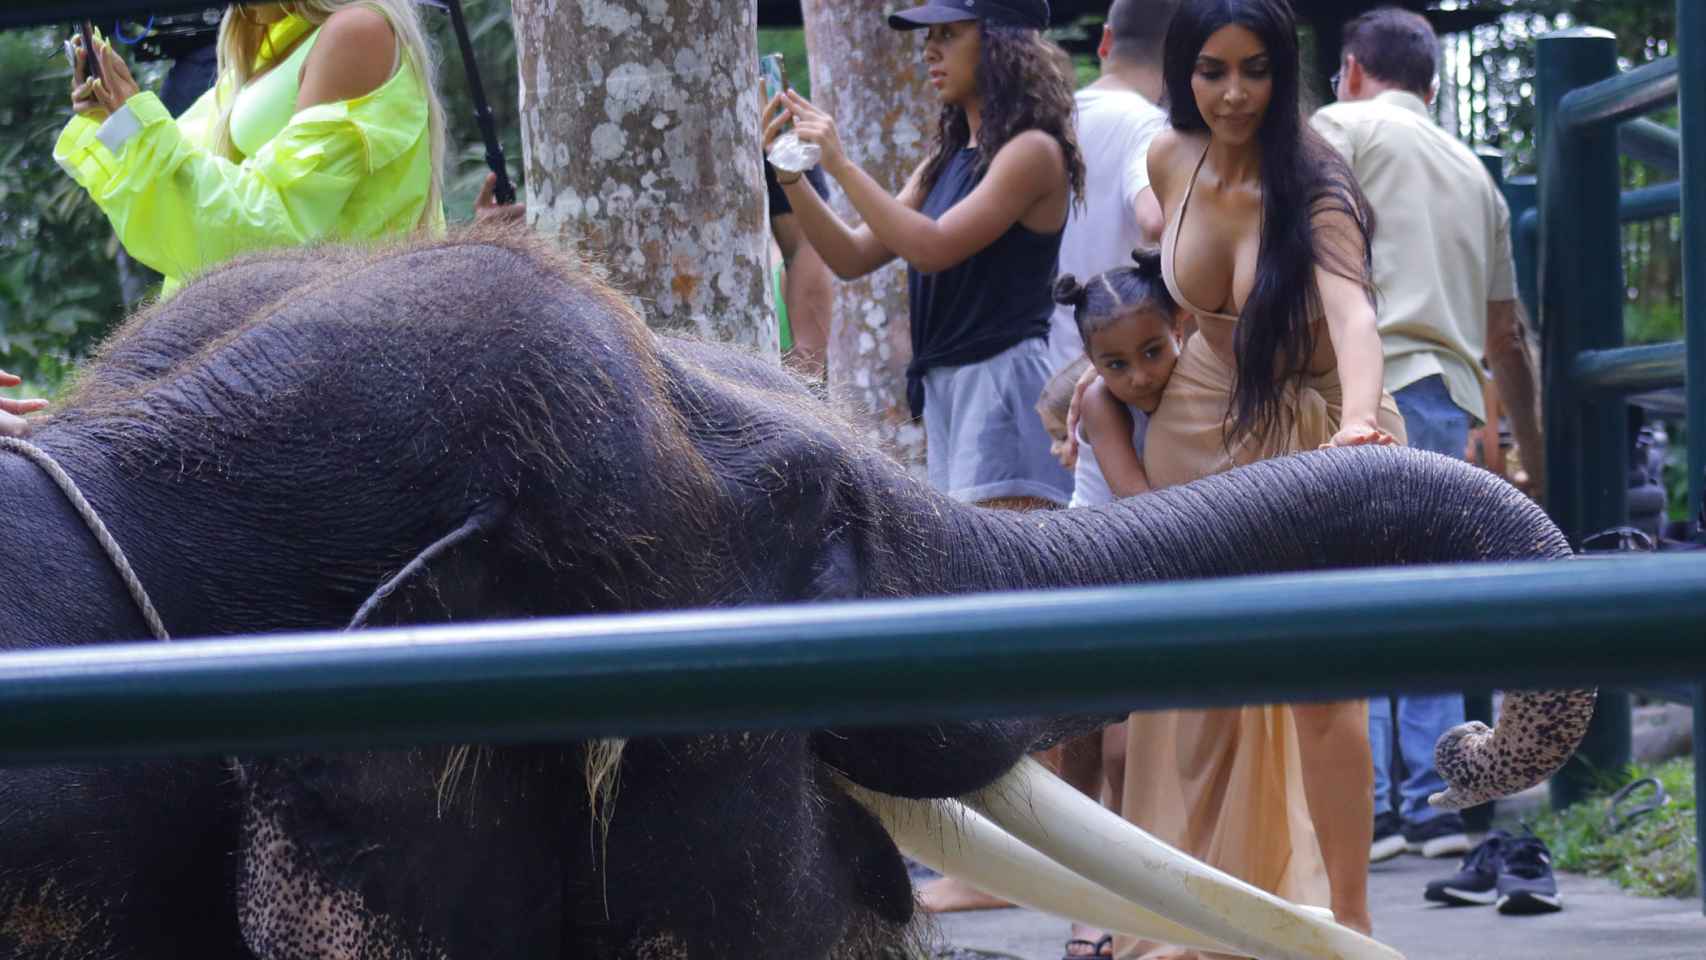 Kim Kardashiam y su hija visitando a un elefante.